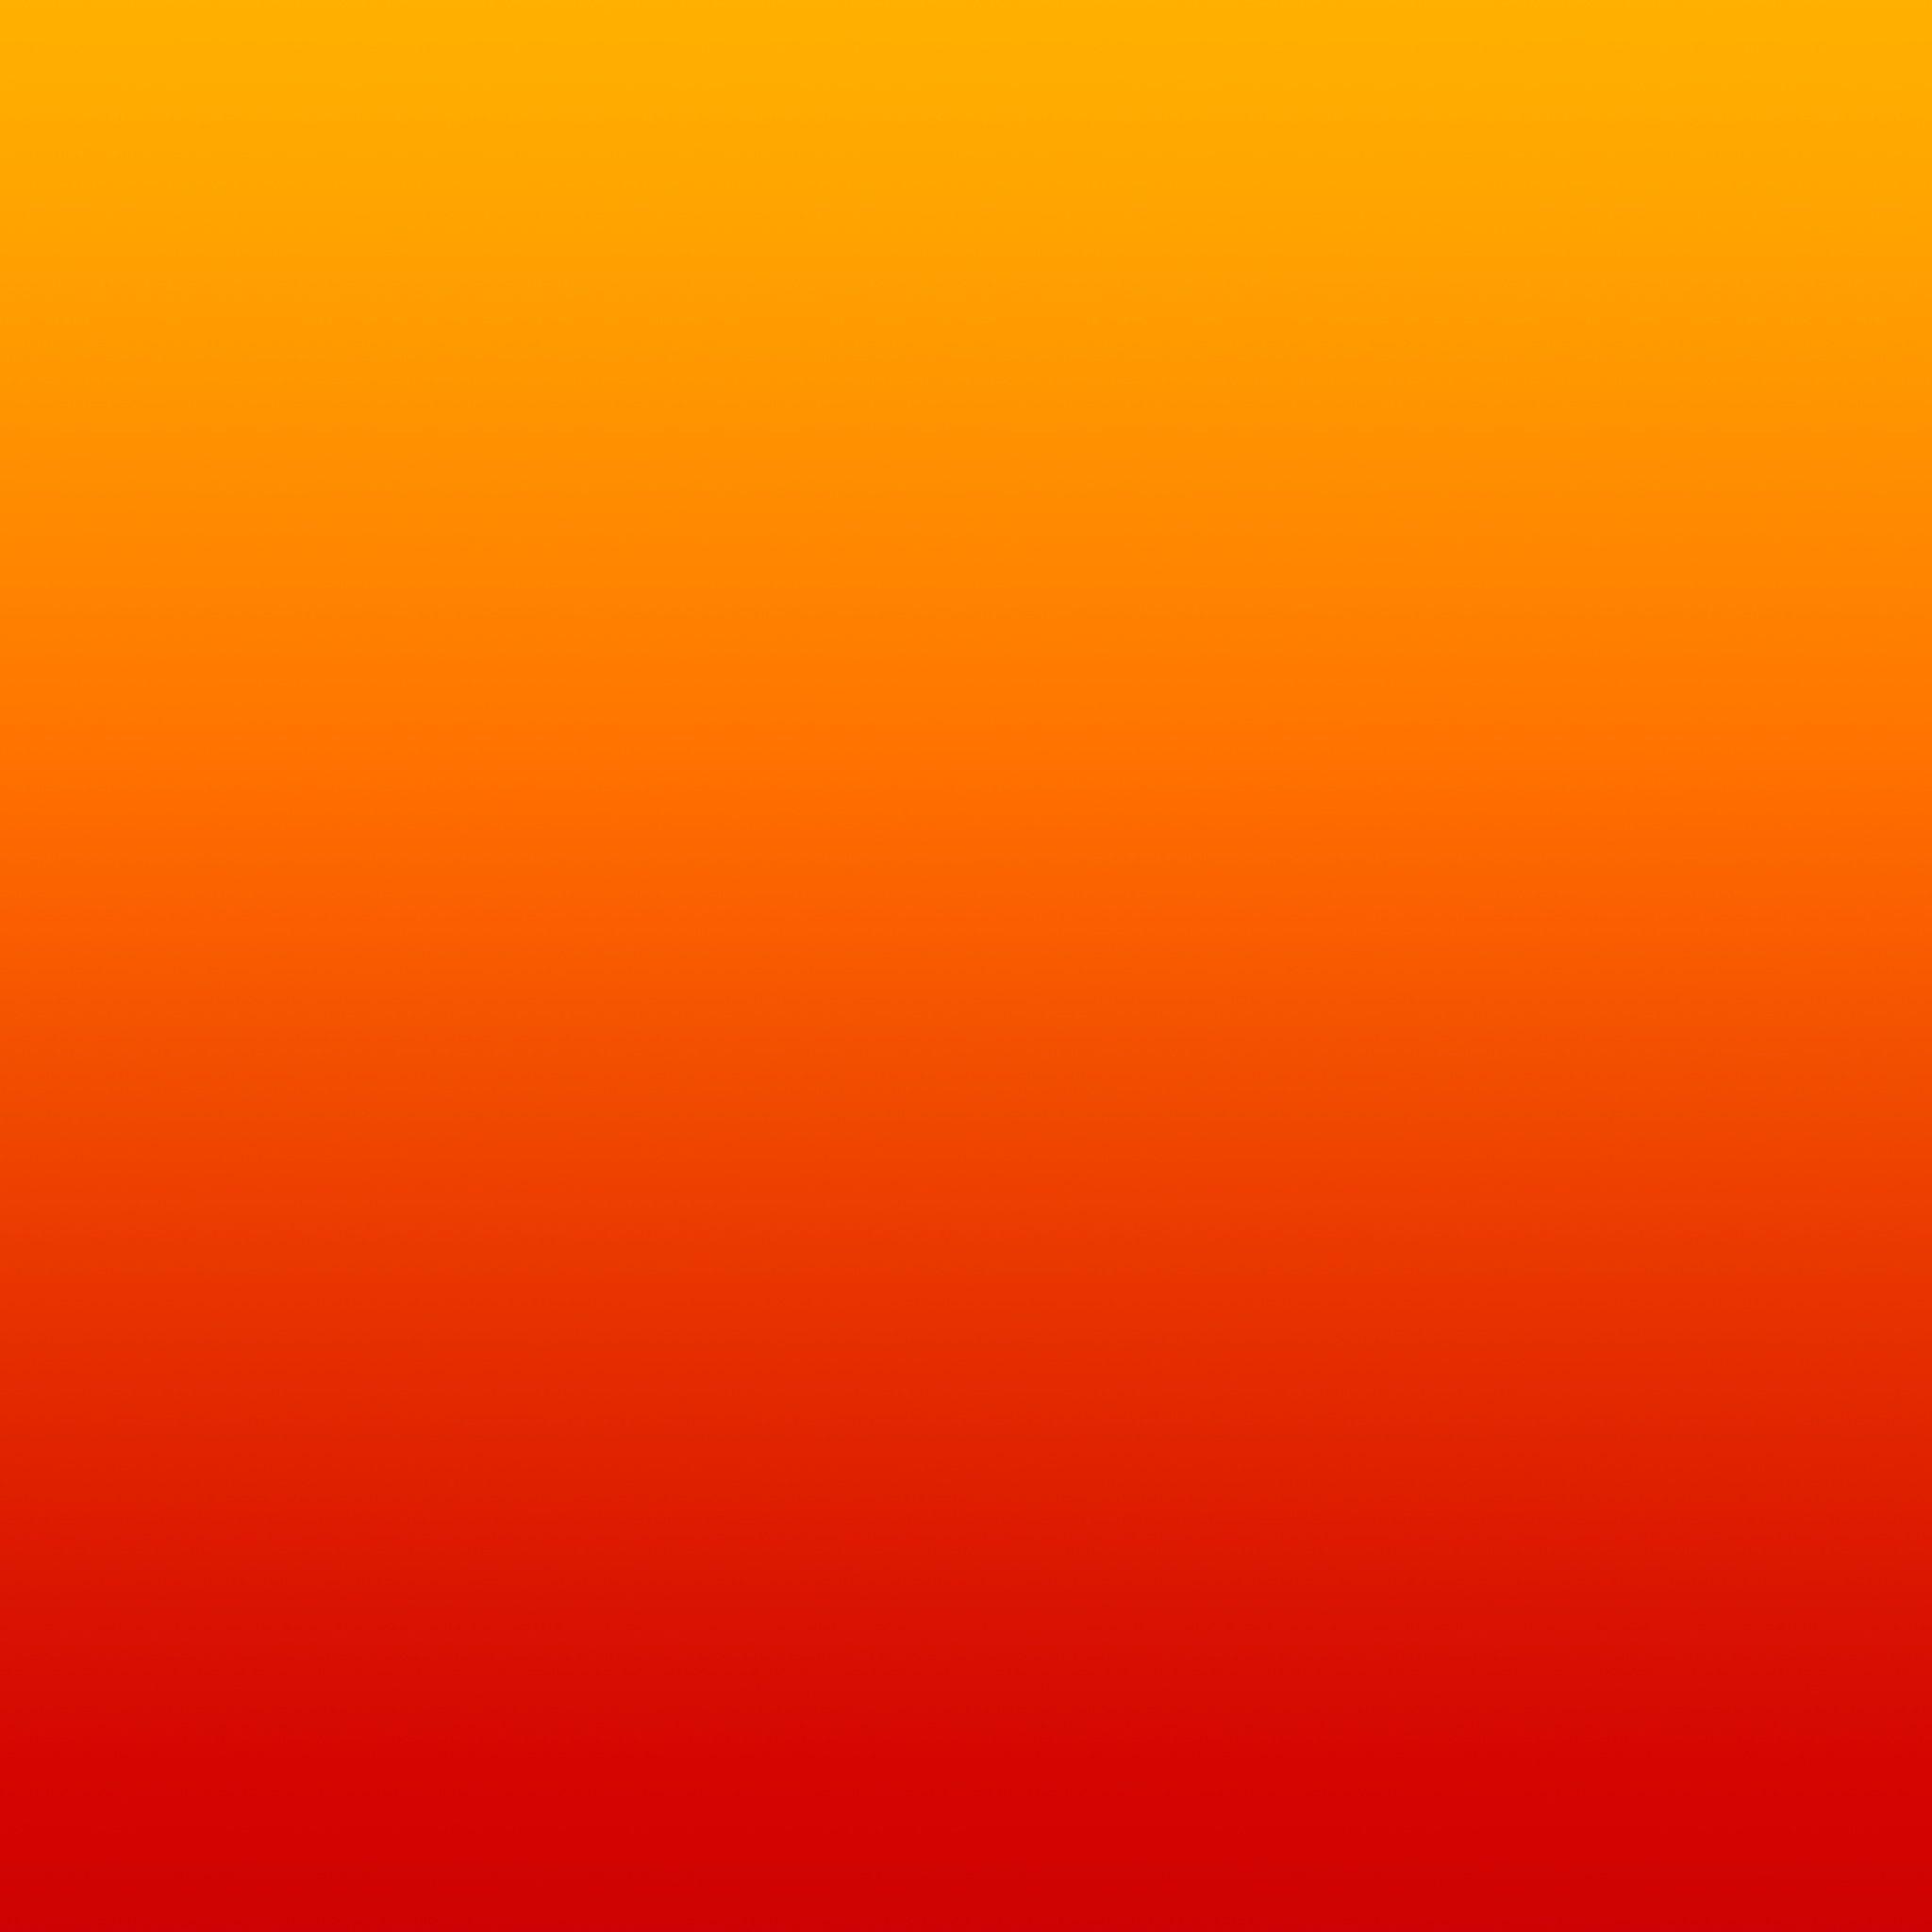 Desktop orange iphone wallpaper download